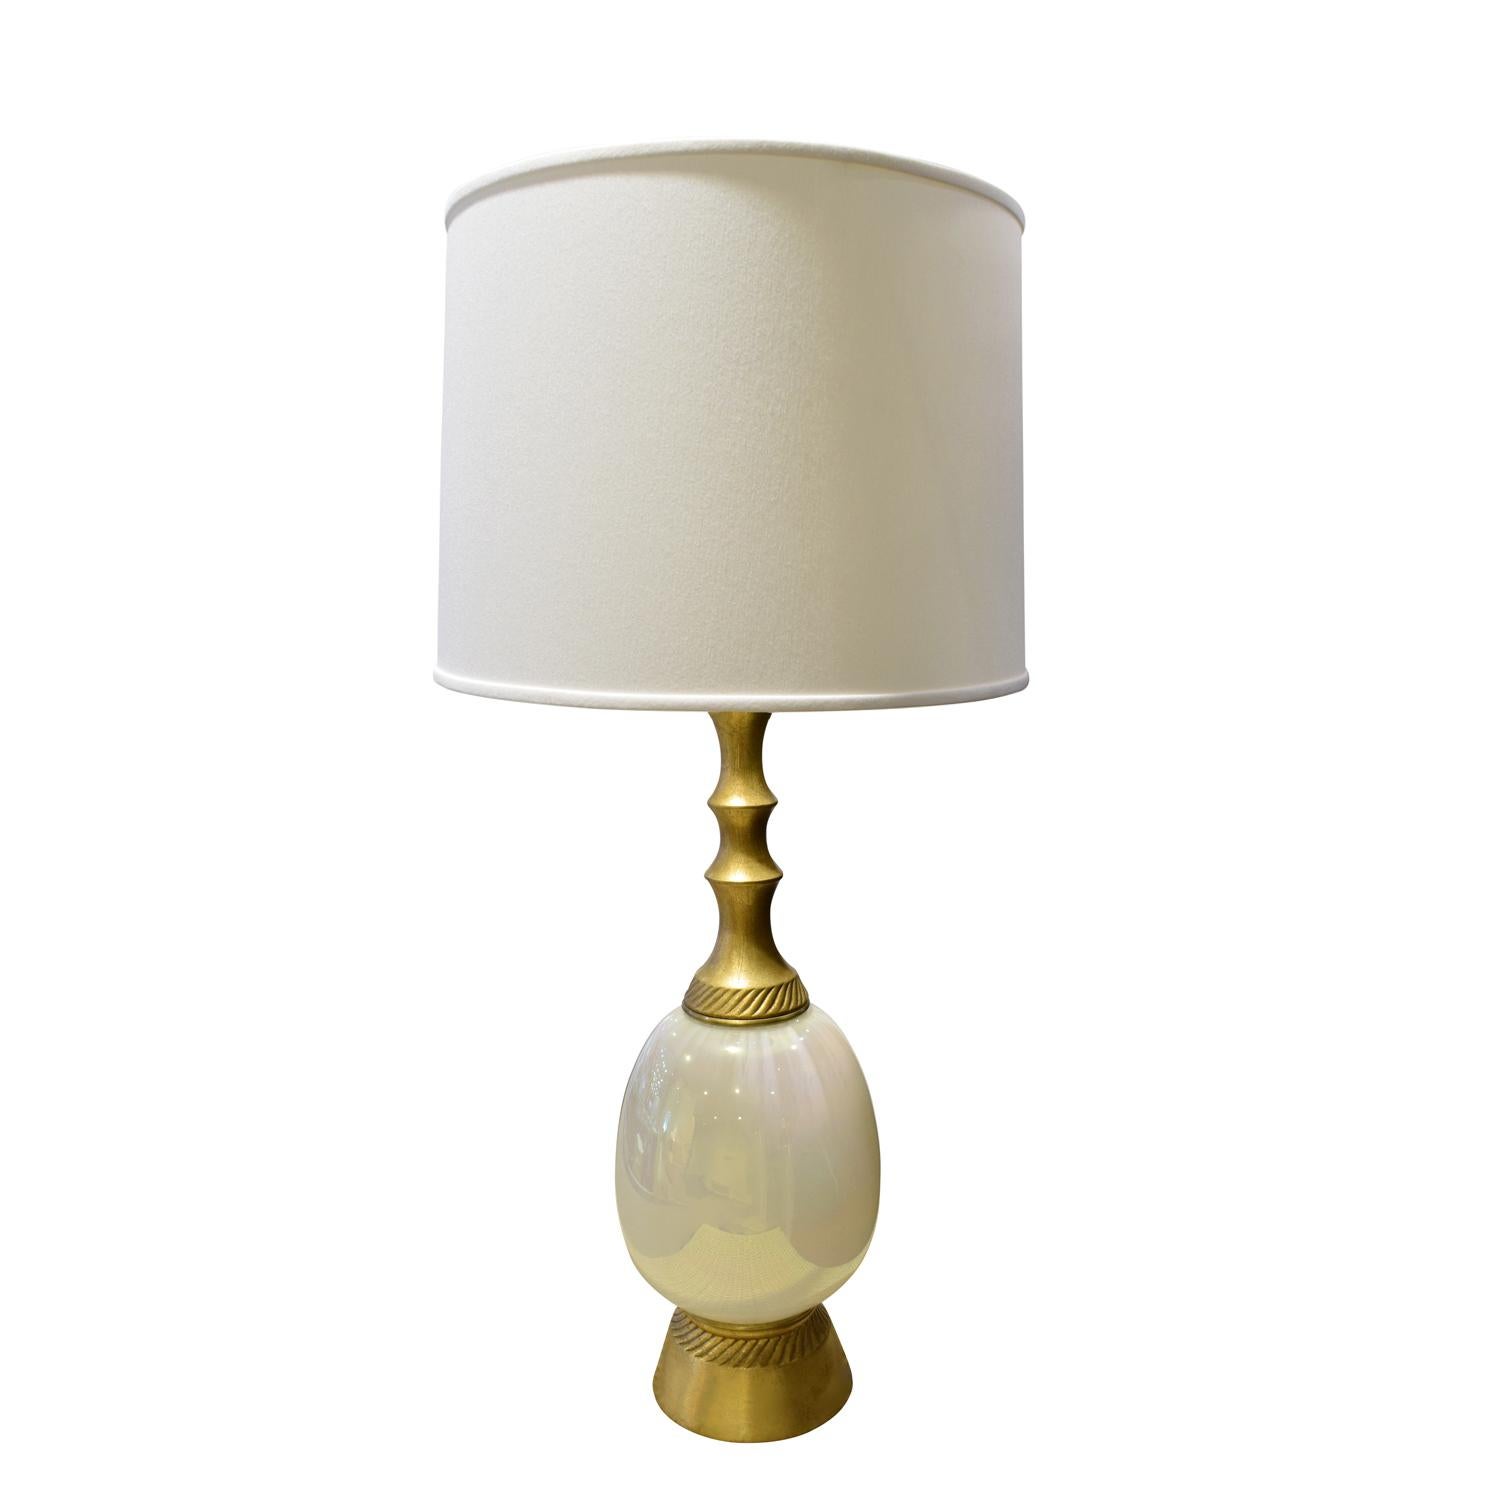 Elegante Tischleuchte, vergoldet mit Opalglas, von F.A.I.P., amerikanisch, 1950er Jahre (signiert auf dem Sockel).

Maßnahmen:
Durchmesser des Lampenschirms 18 Zoll
Höhe des Schirms 12 Zoll.